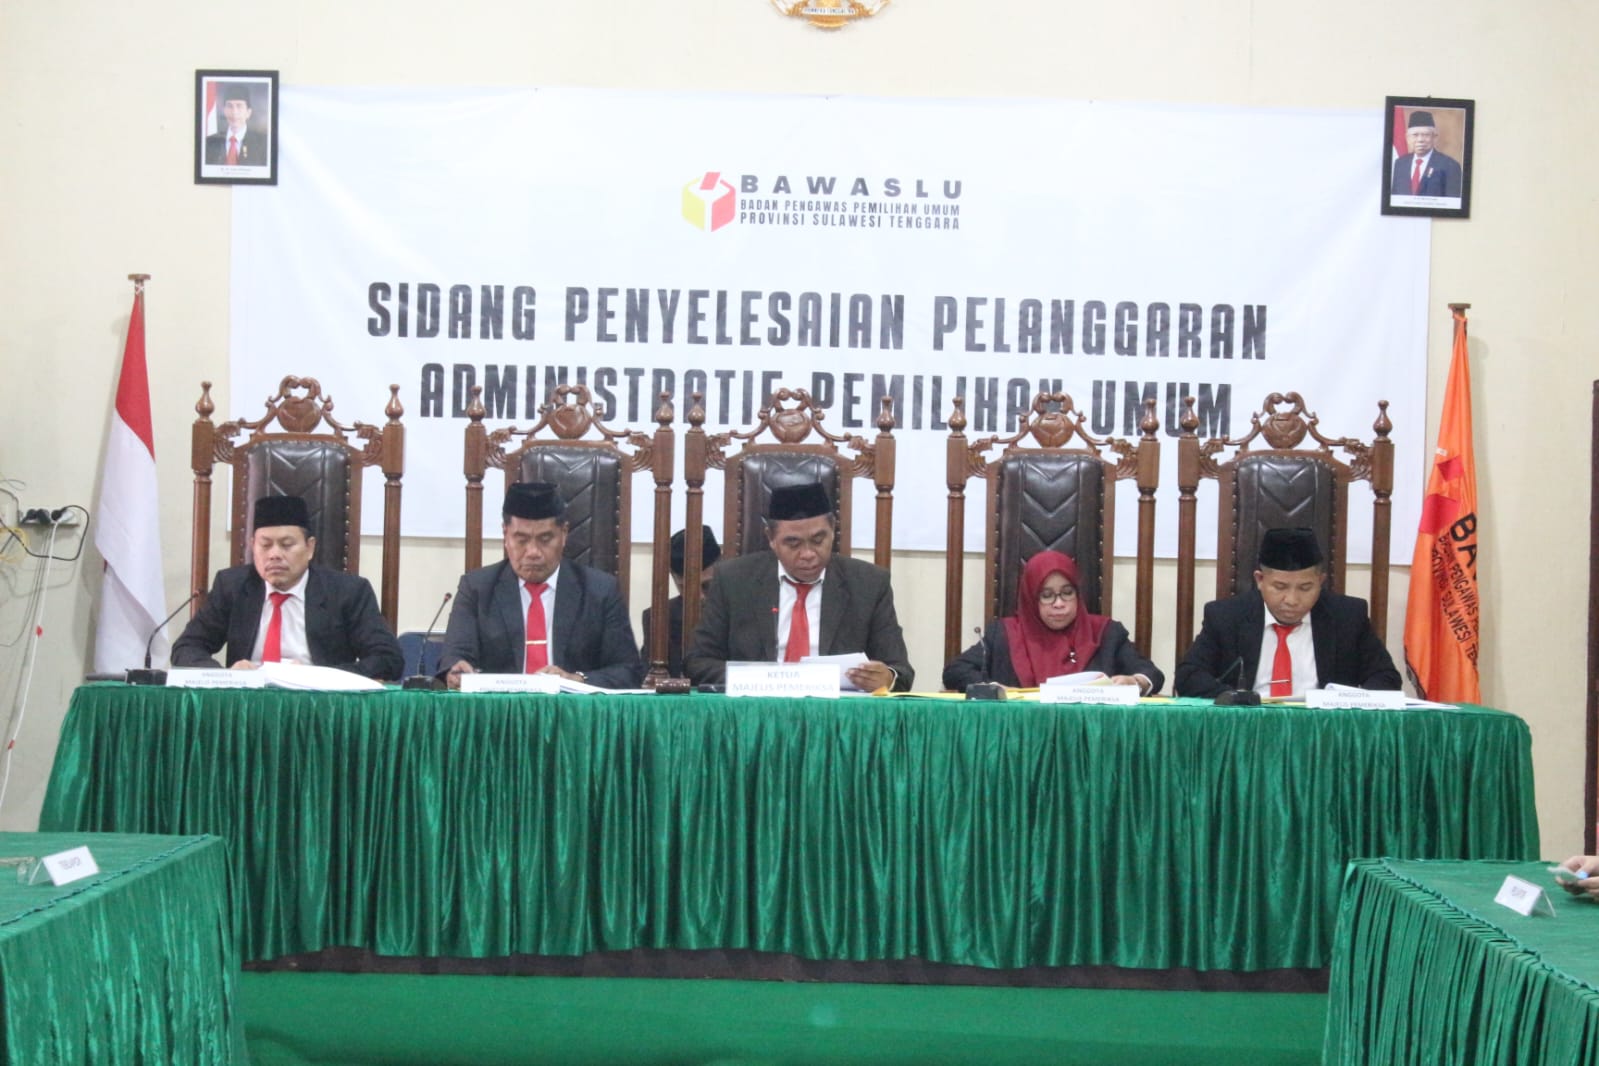 Laporan Burhanis dan Tie Saranani Diterima Bawaslu, KPU Sulawesi Tenggara Dinyatakan Langgar Administrasi